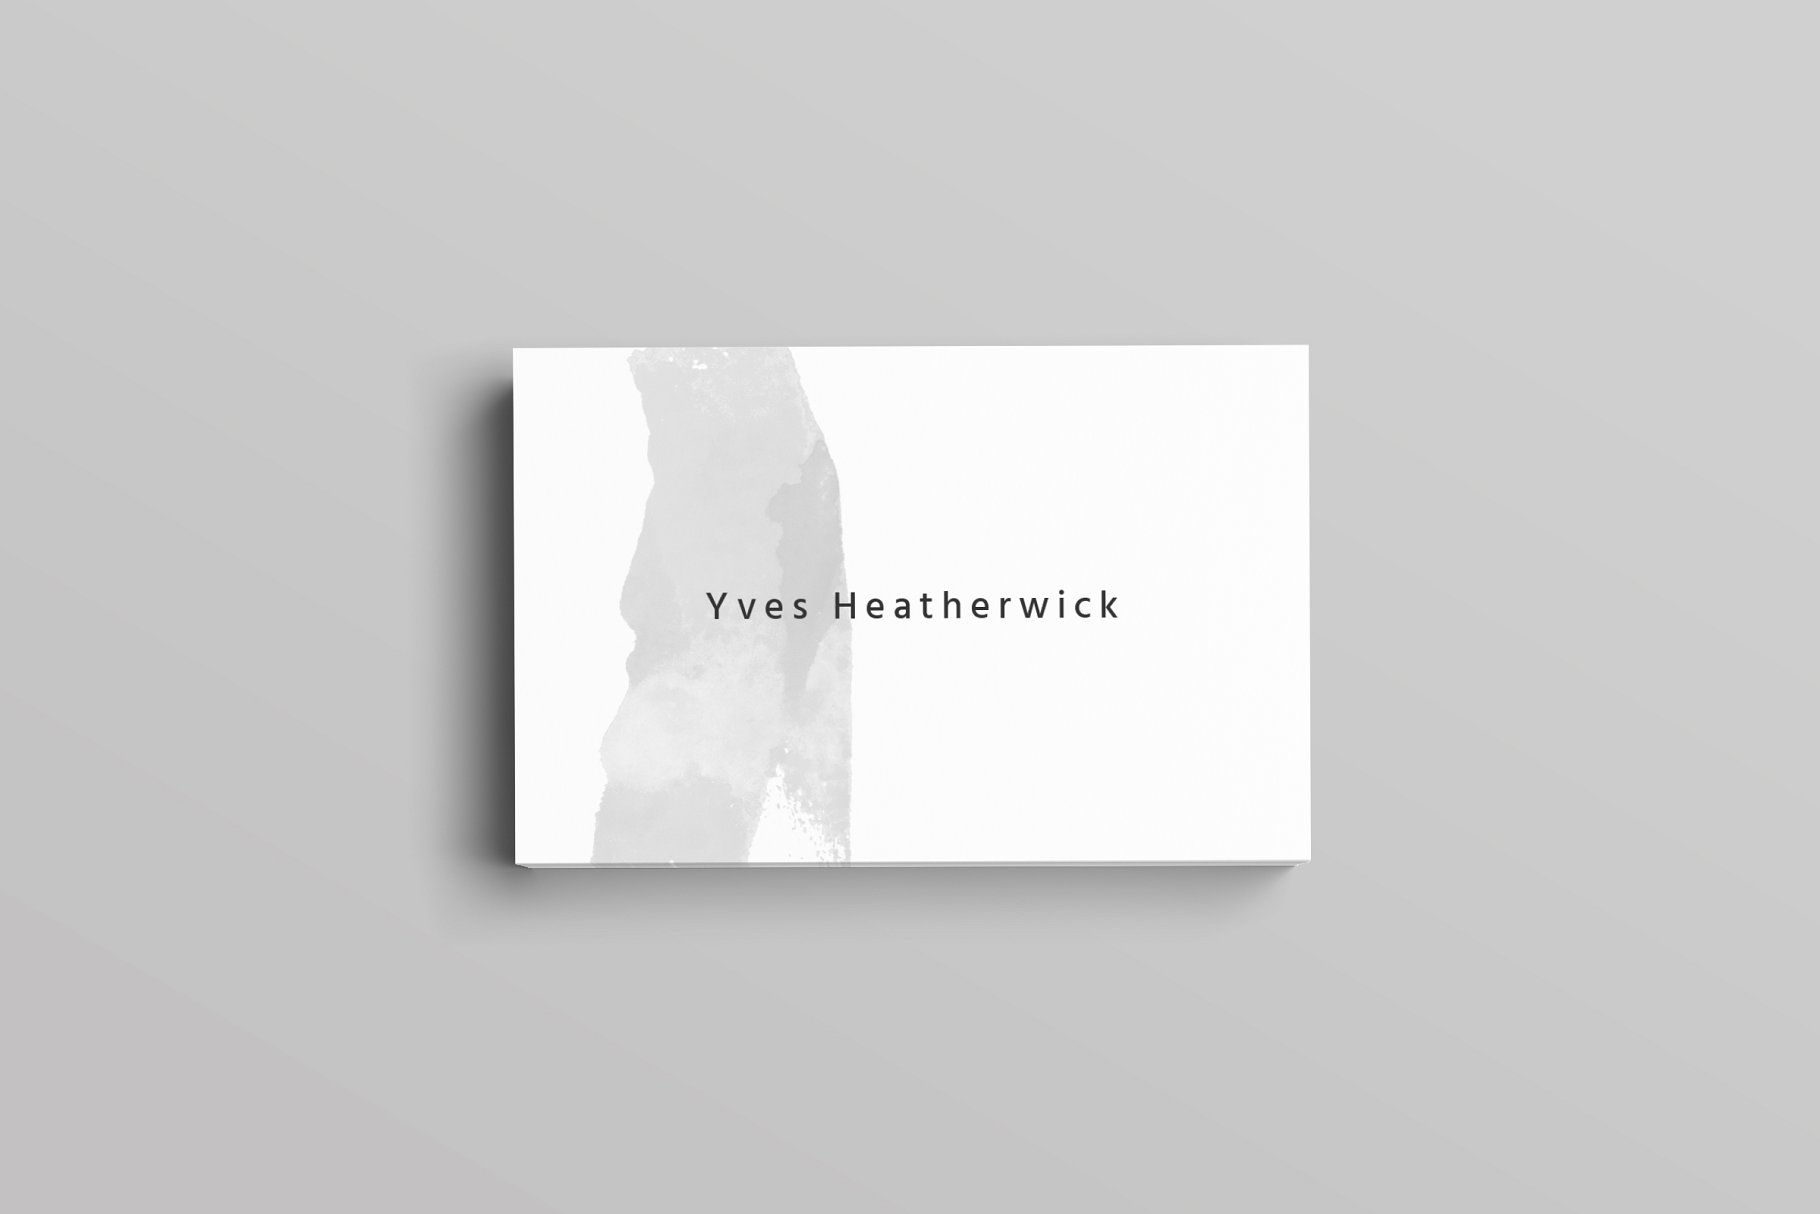 极简主义设计风格企业名片设计模板 Heatherwick Business Card Template插图2